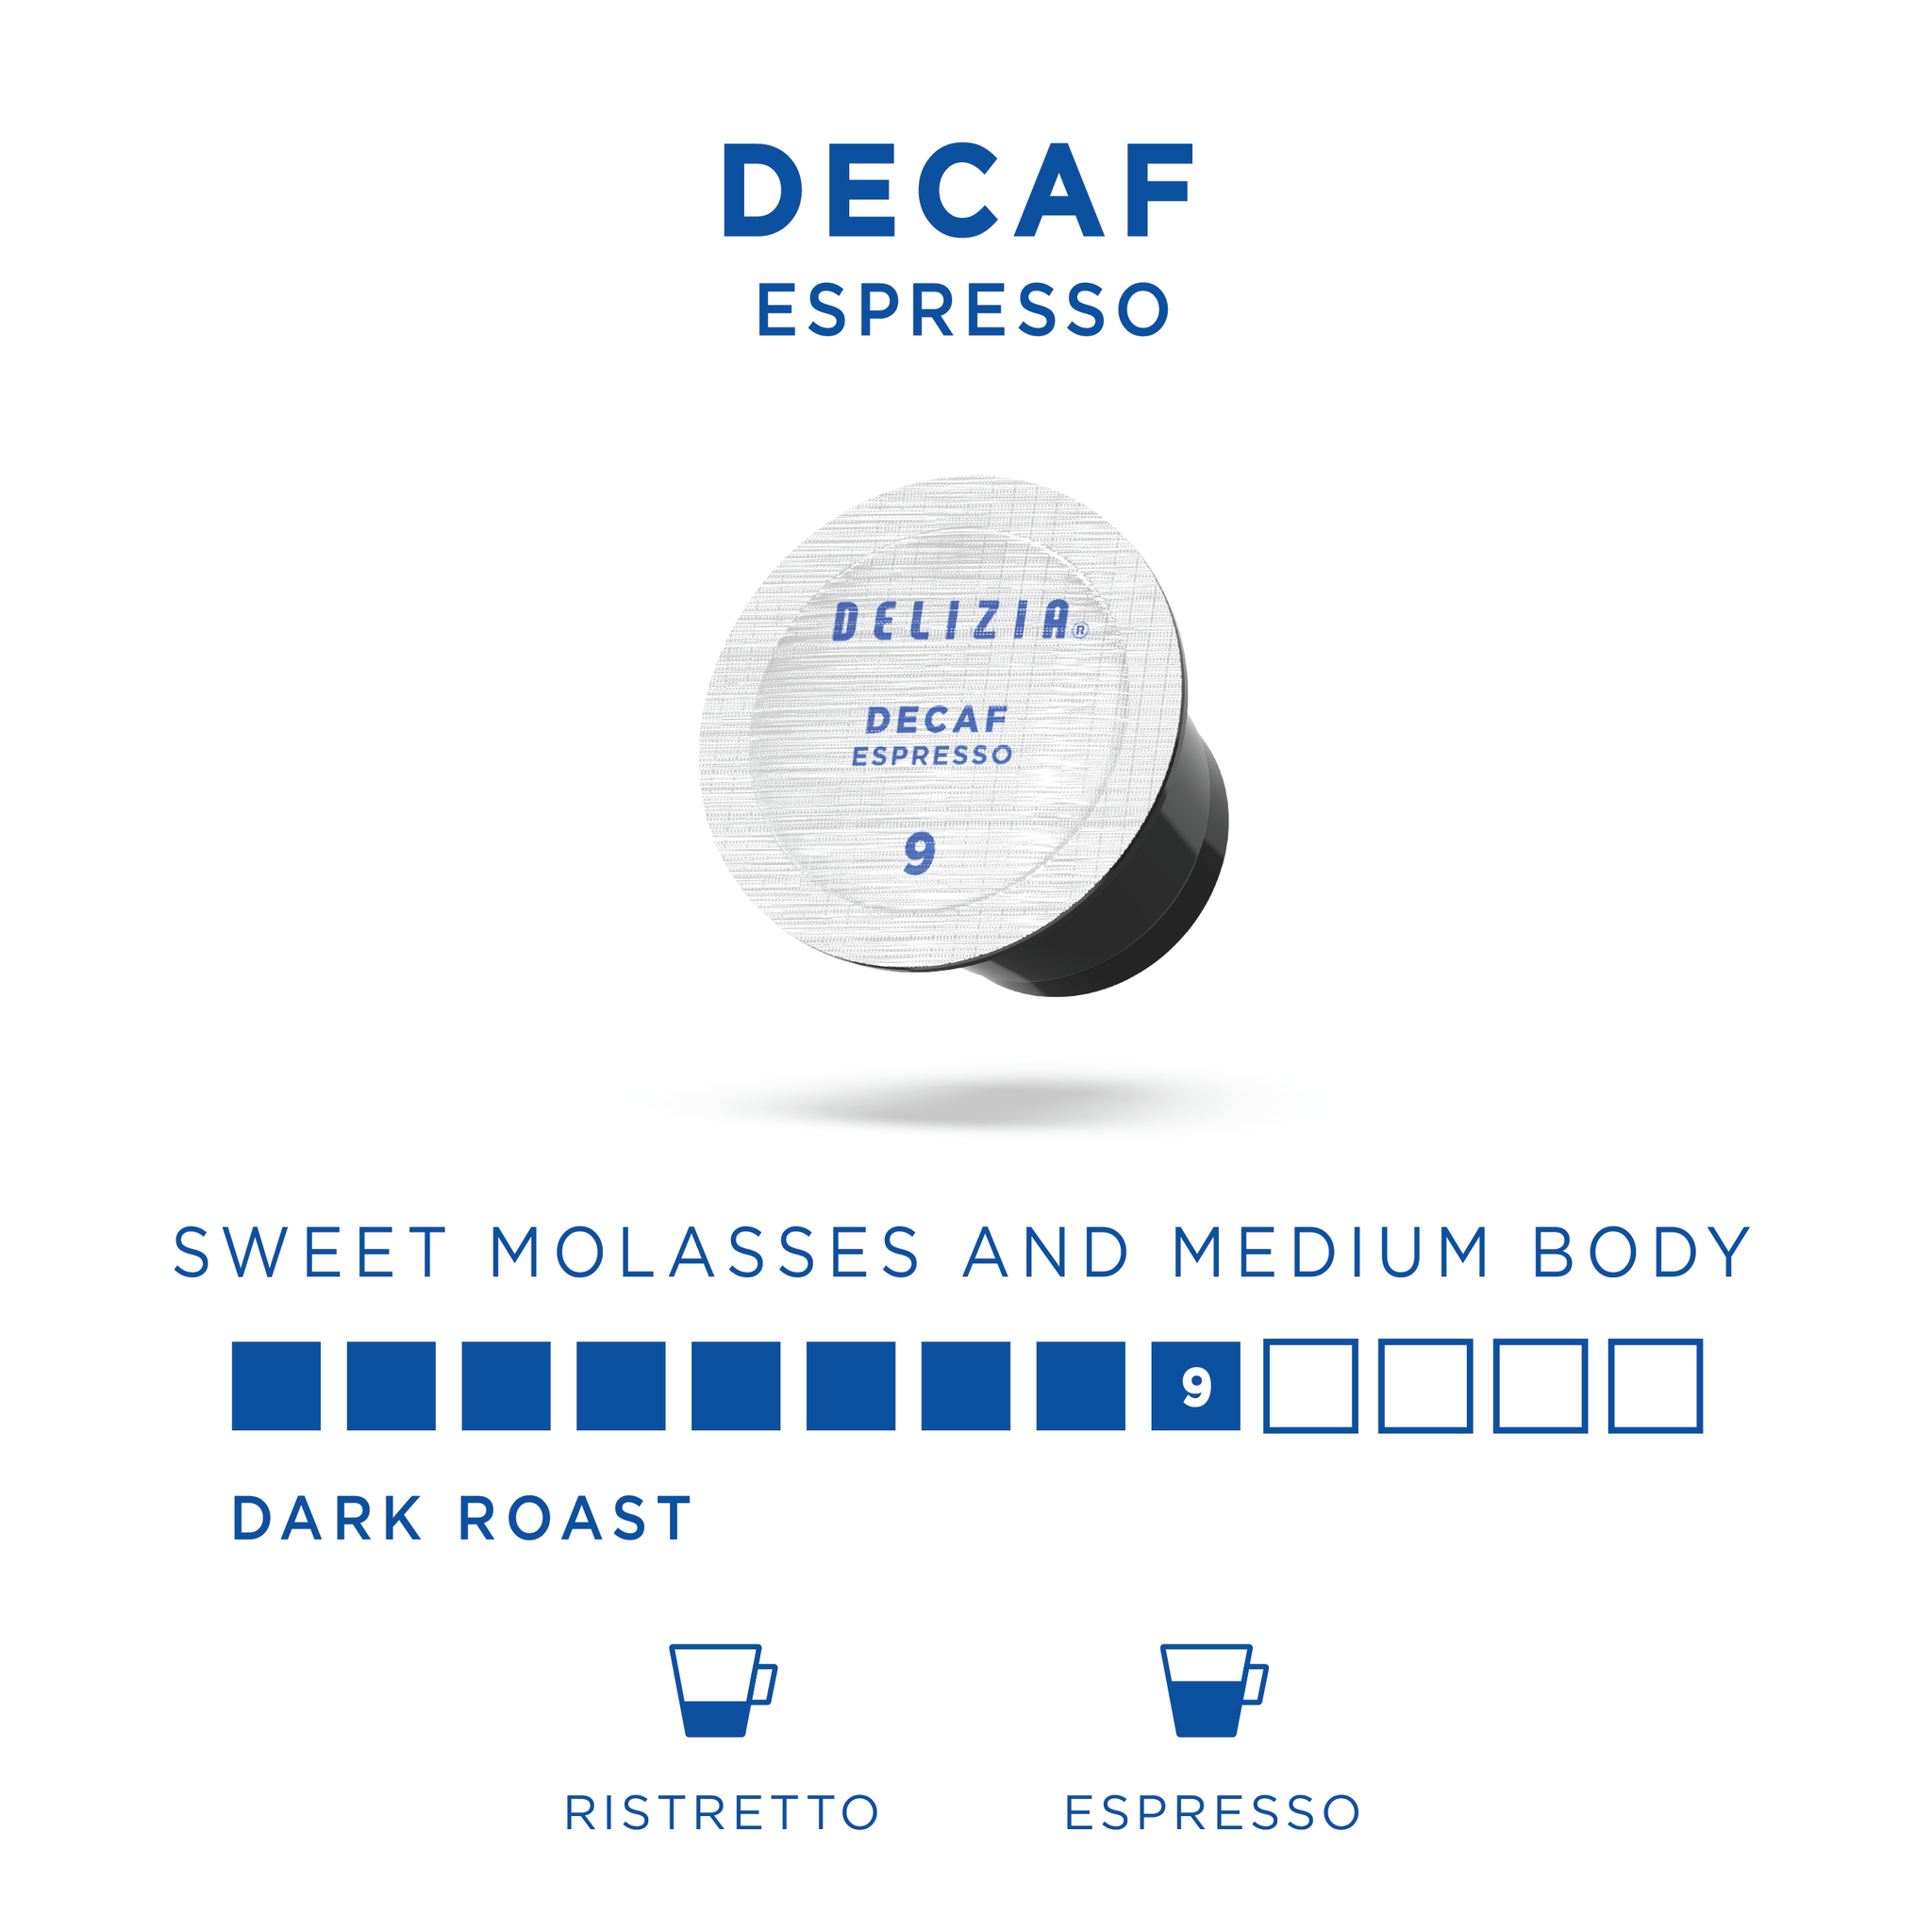 Espresso Pods - Ristretto Decaffeinato Espresso